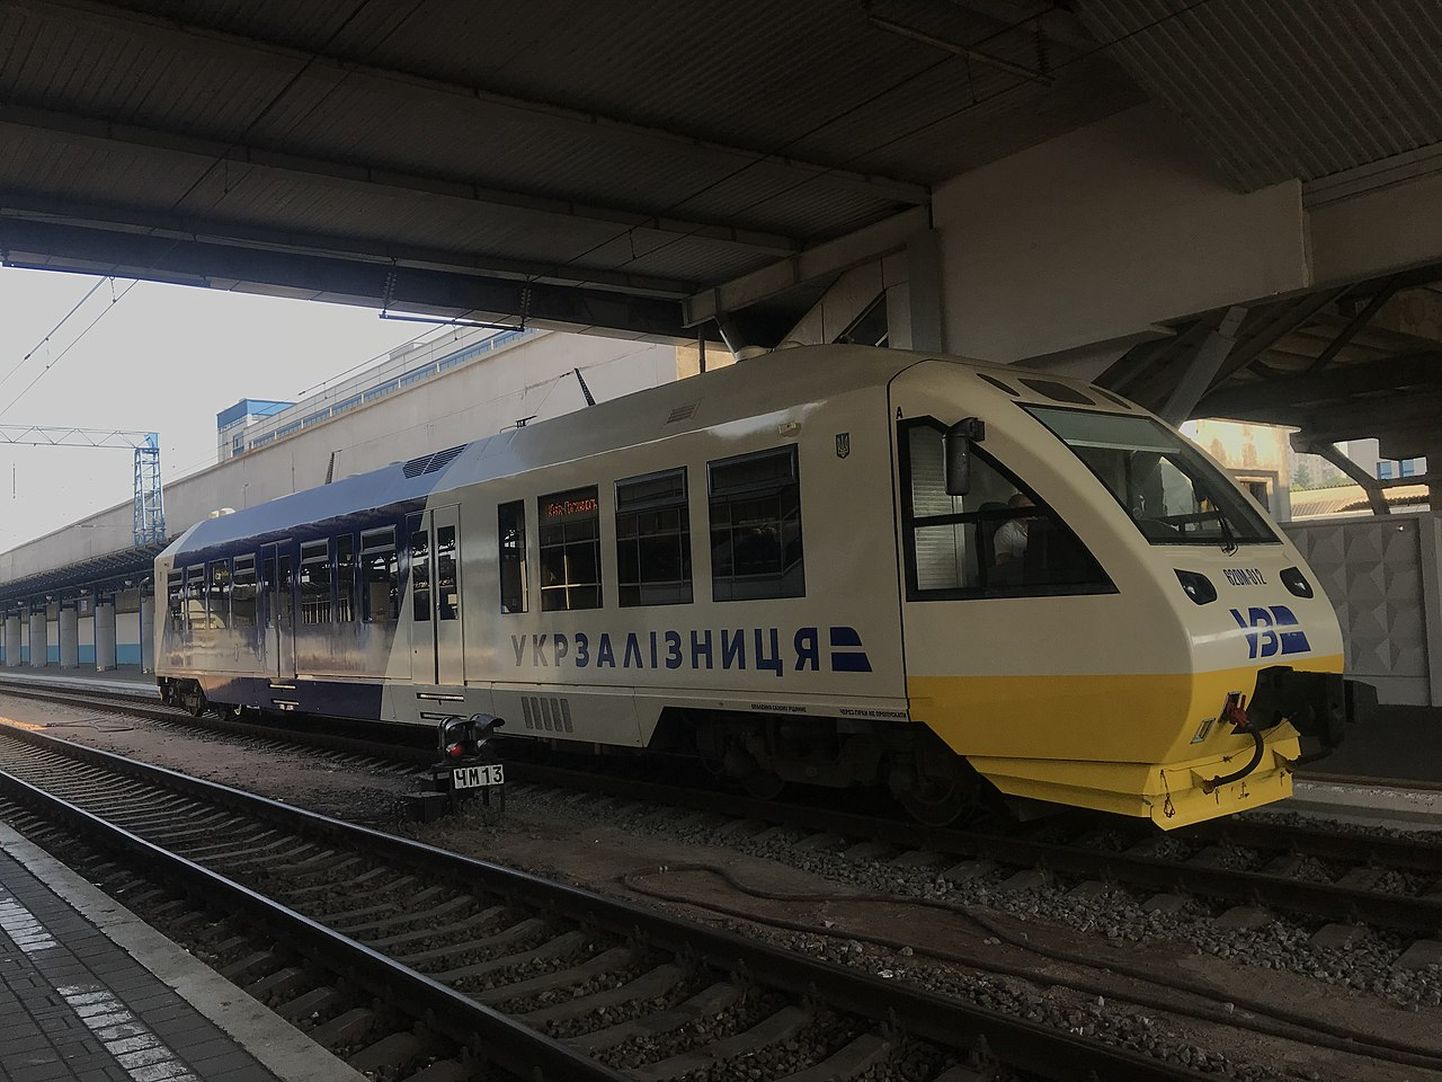 Ukraina Raudteede lokomotiiv Kiievis 20. juunil 2019.